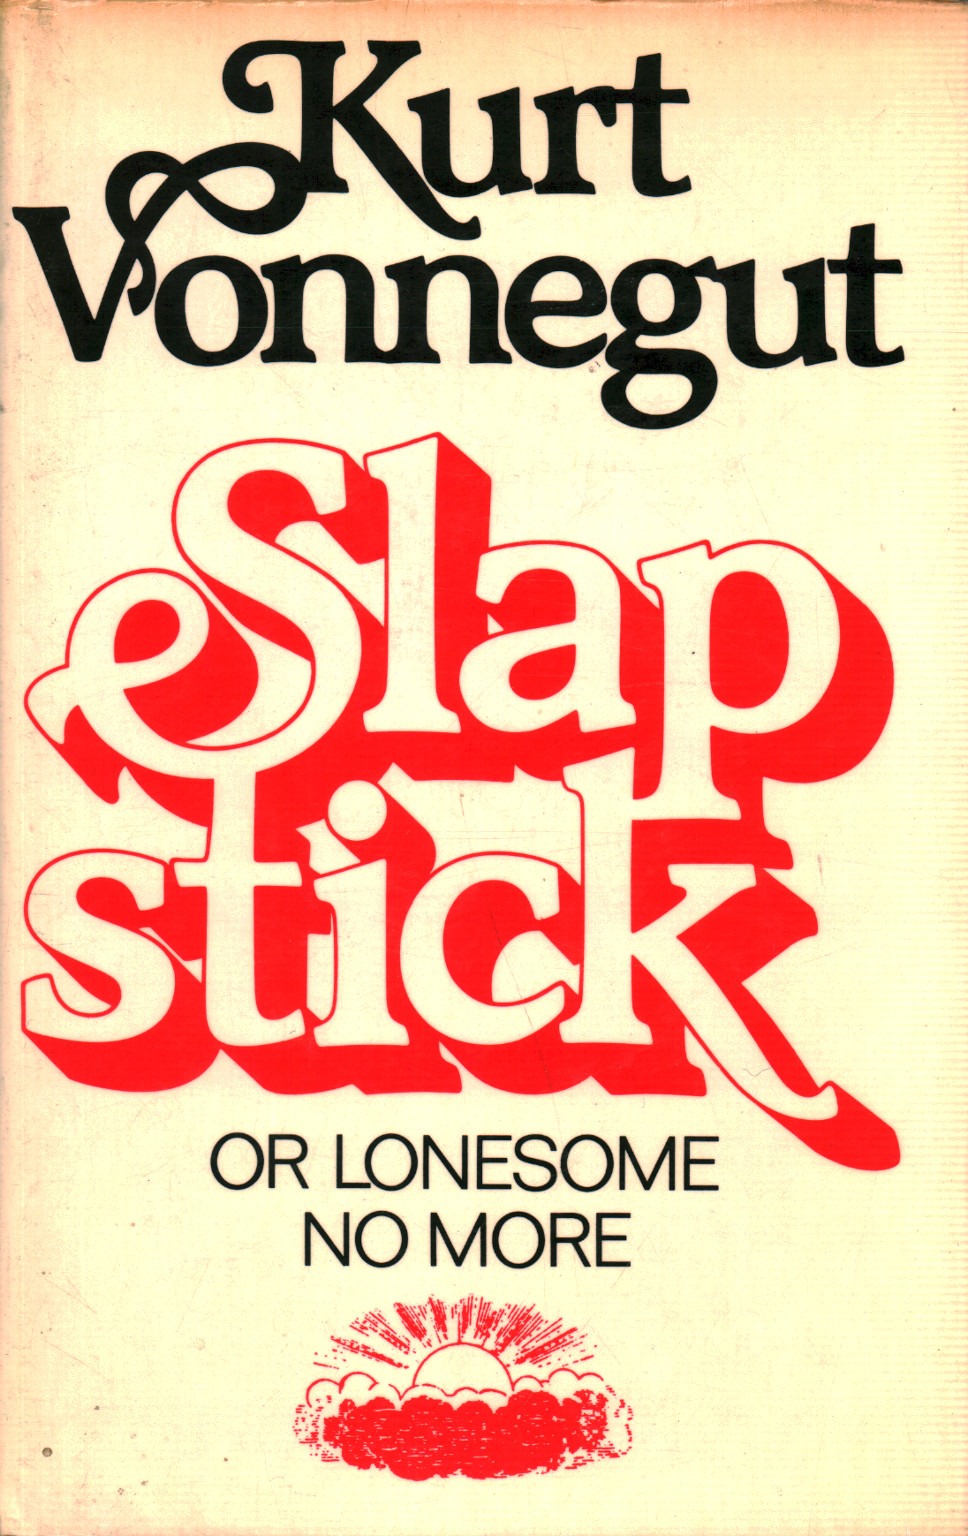 Slapstick or lonesome no more!, s.zu.